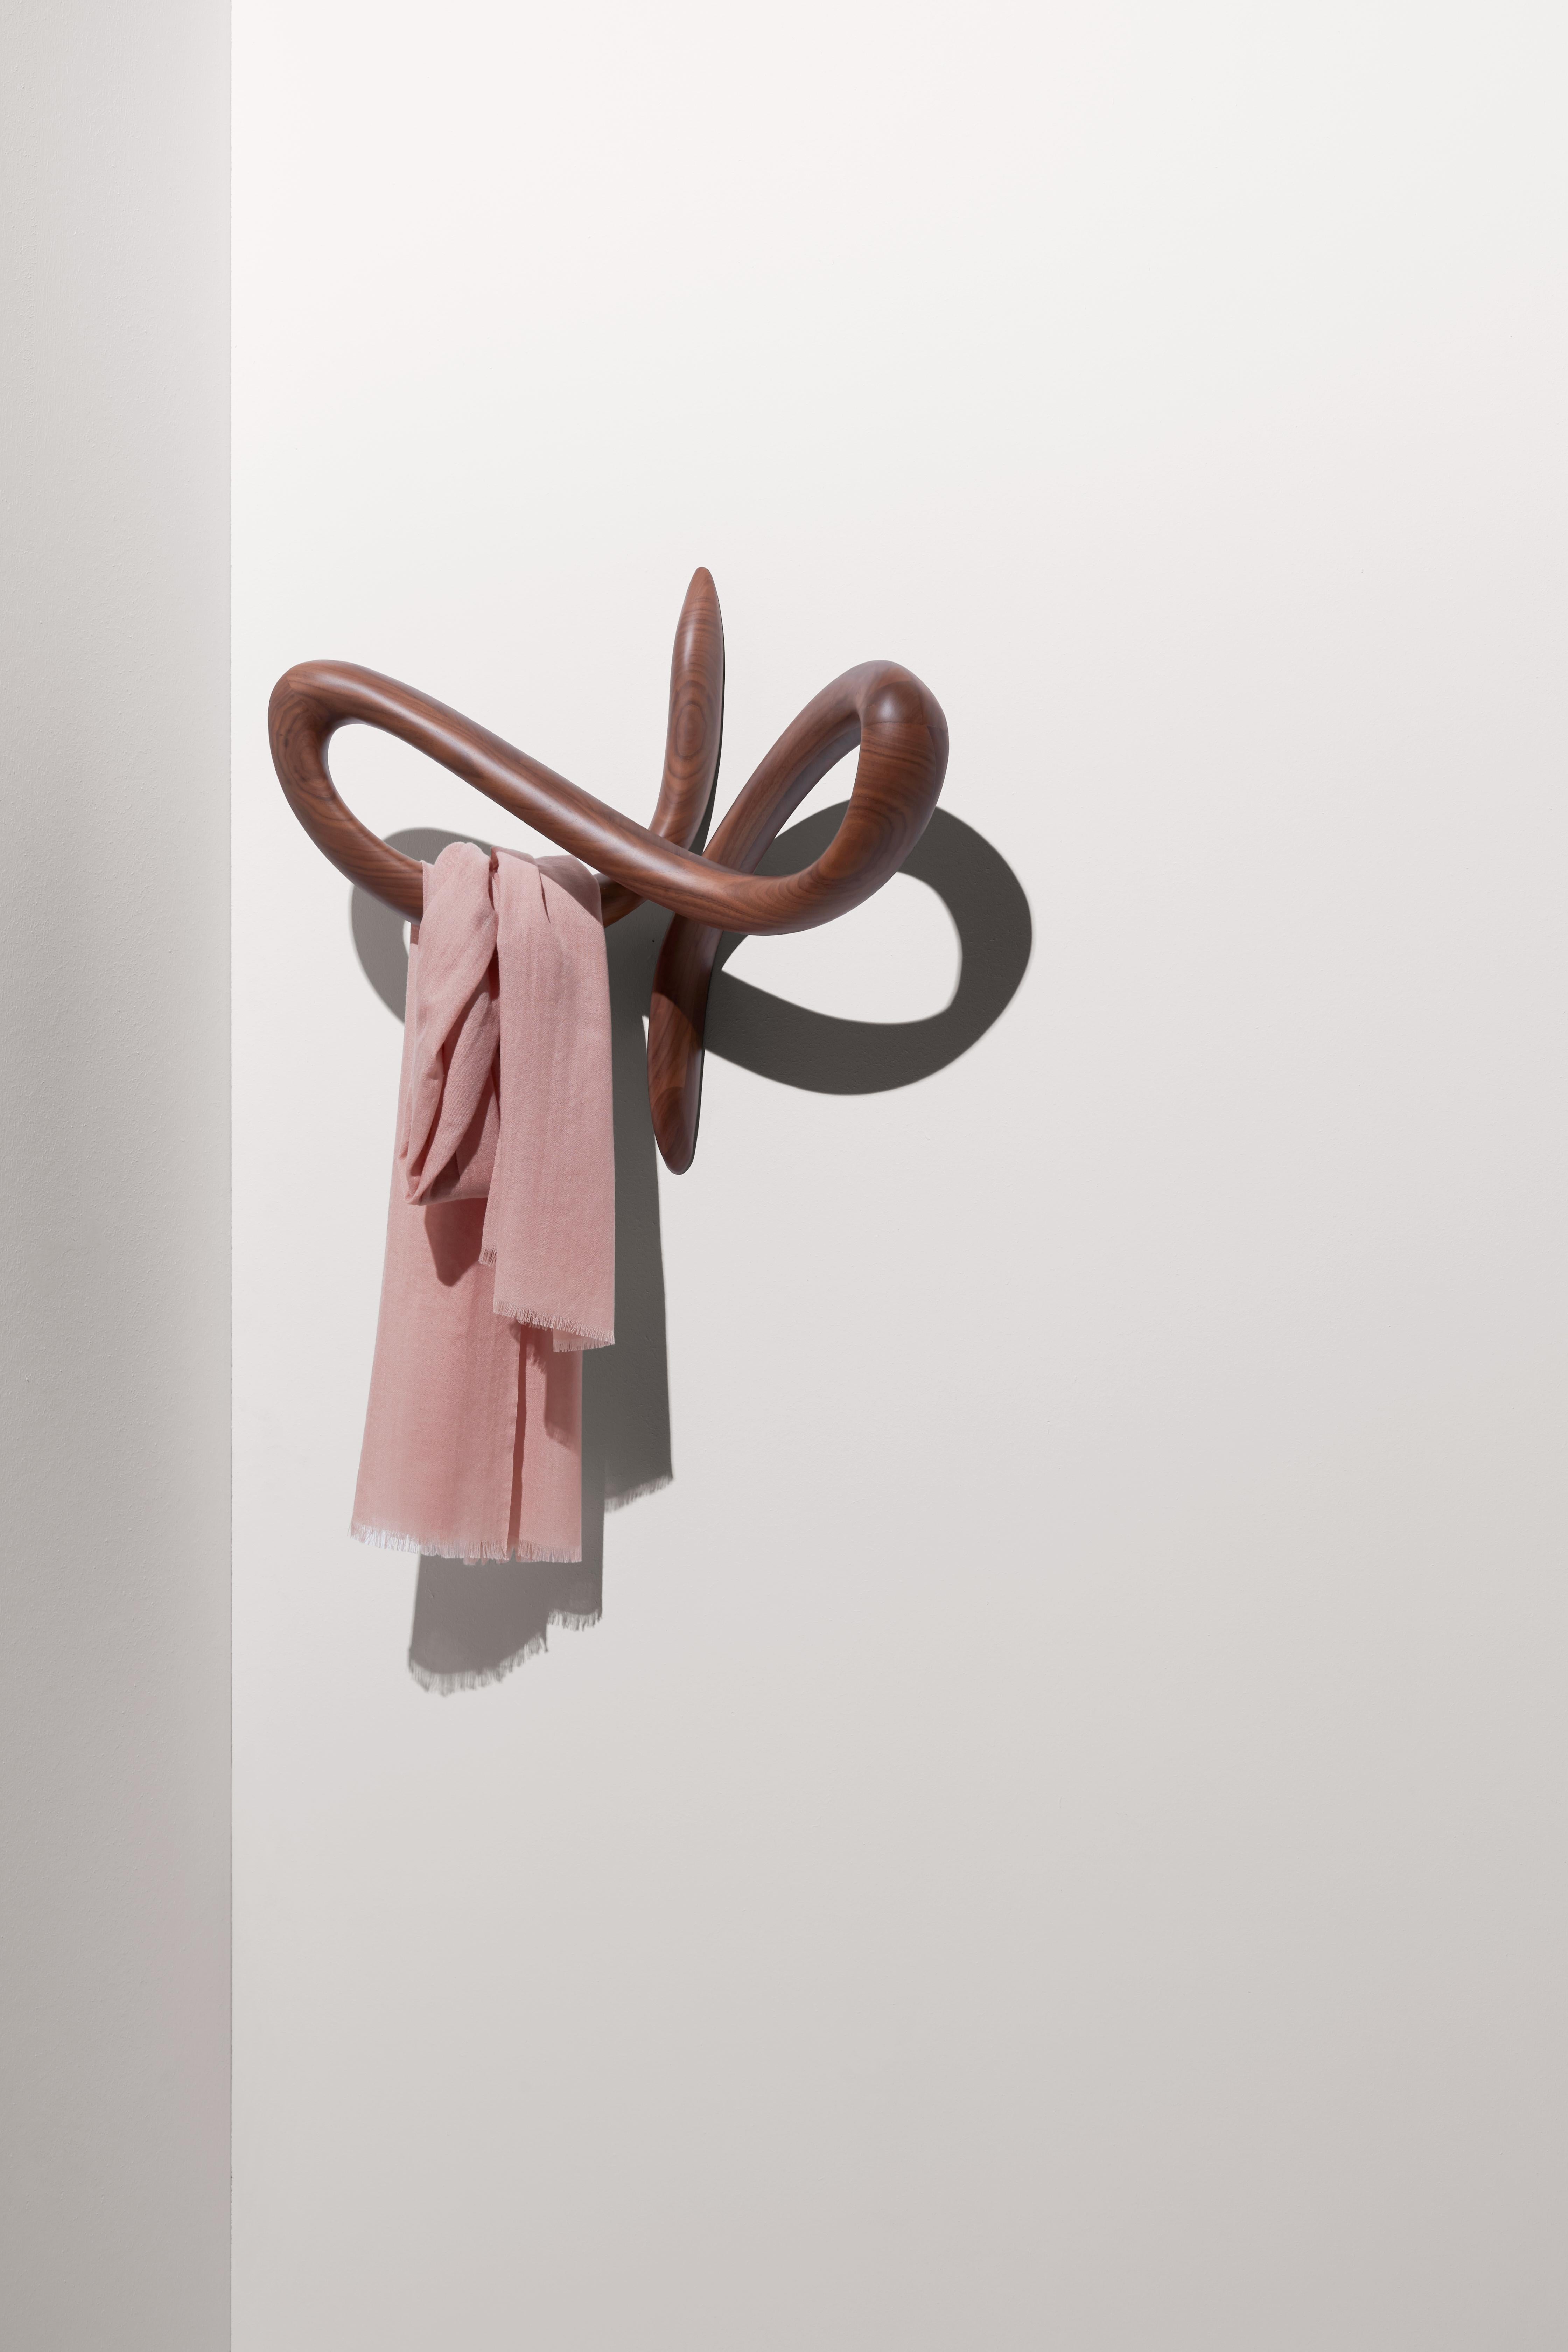 Contemporary Nomon Vertigo Coat Hanger by Andres Martinez  For Sale